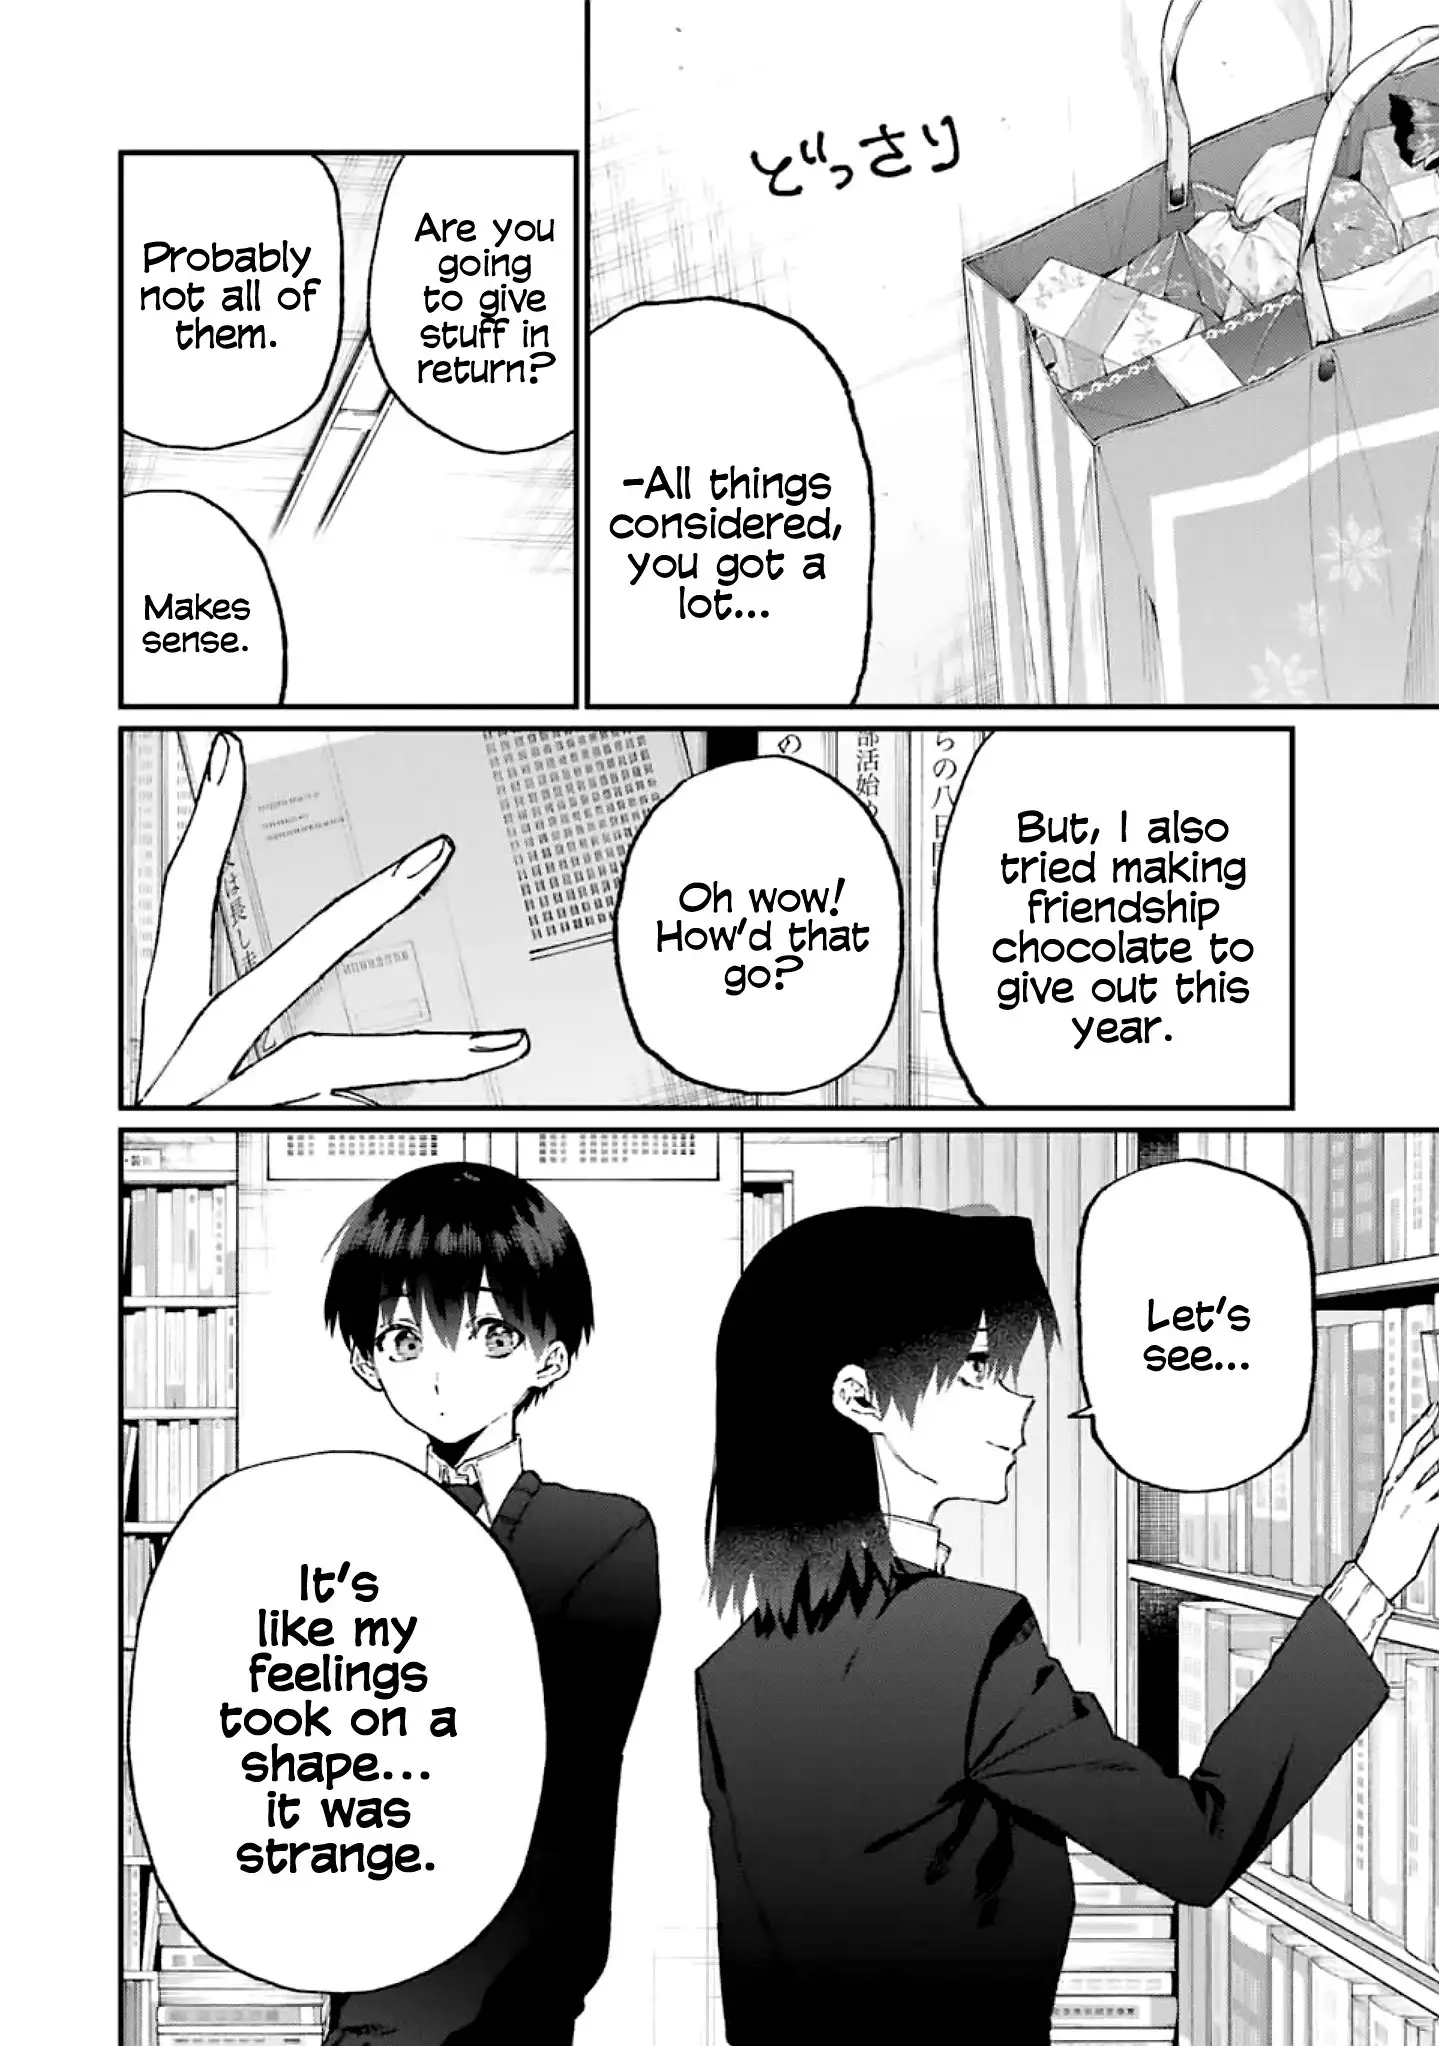 Shikimori's Not Just A Cutie - 107 page 3